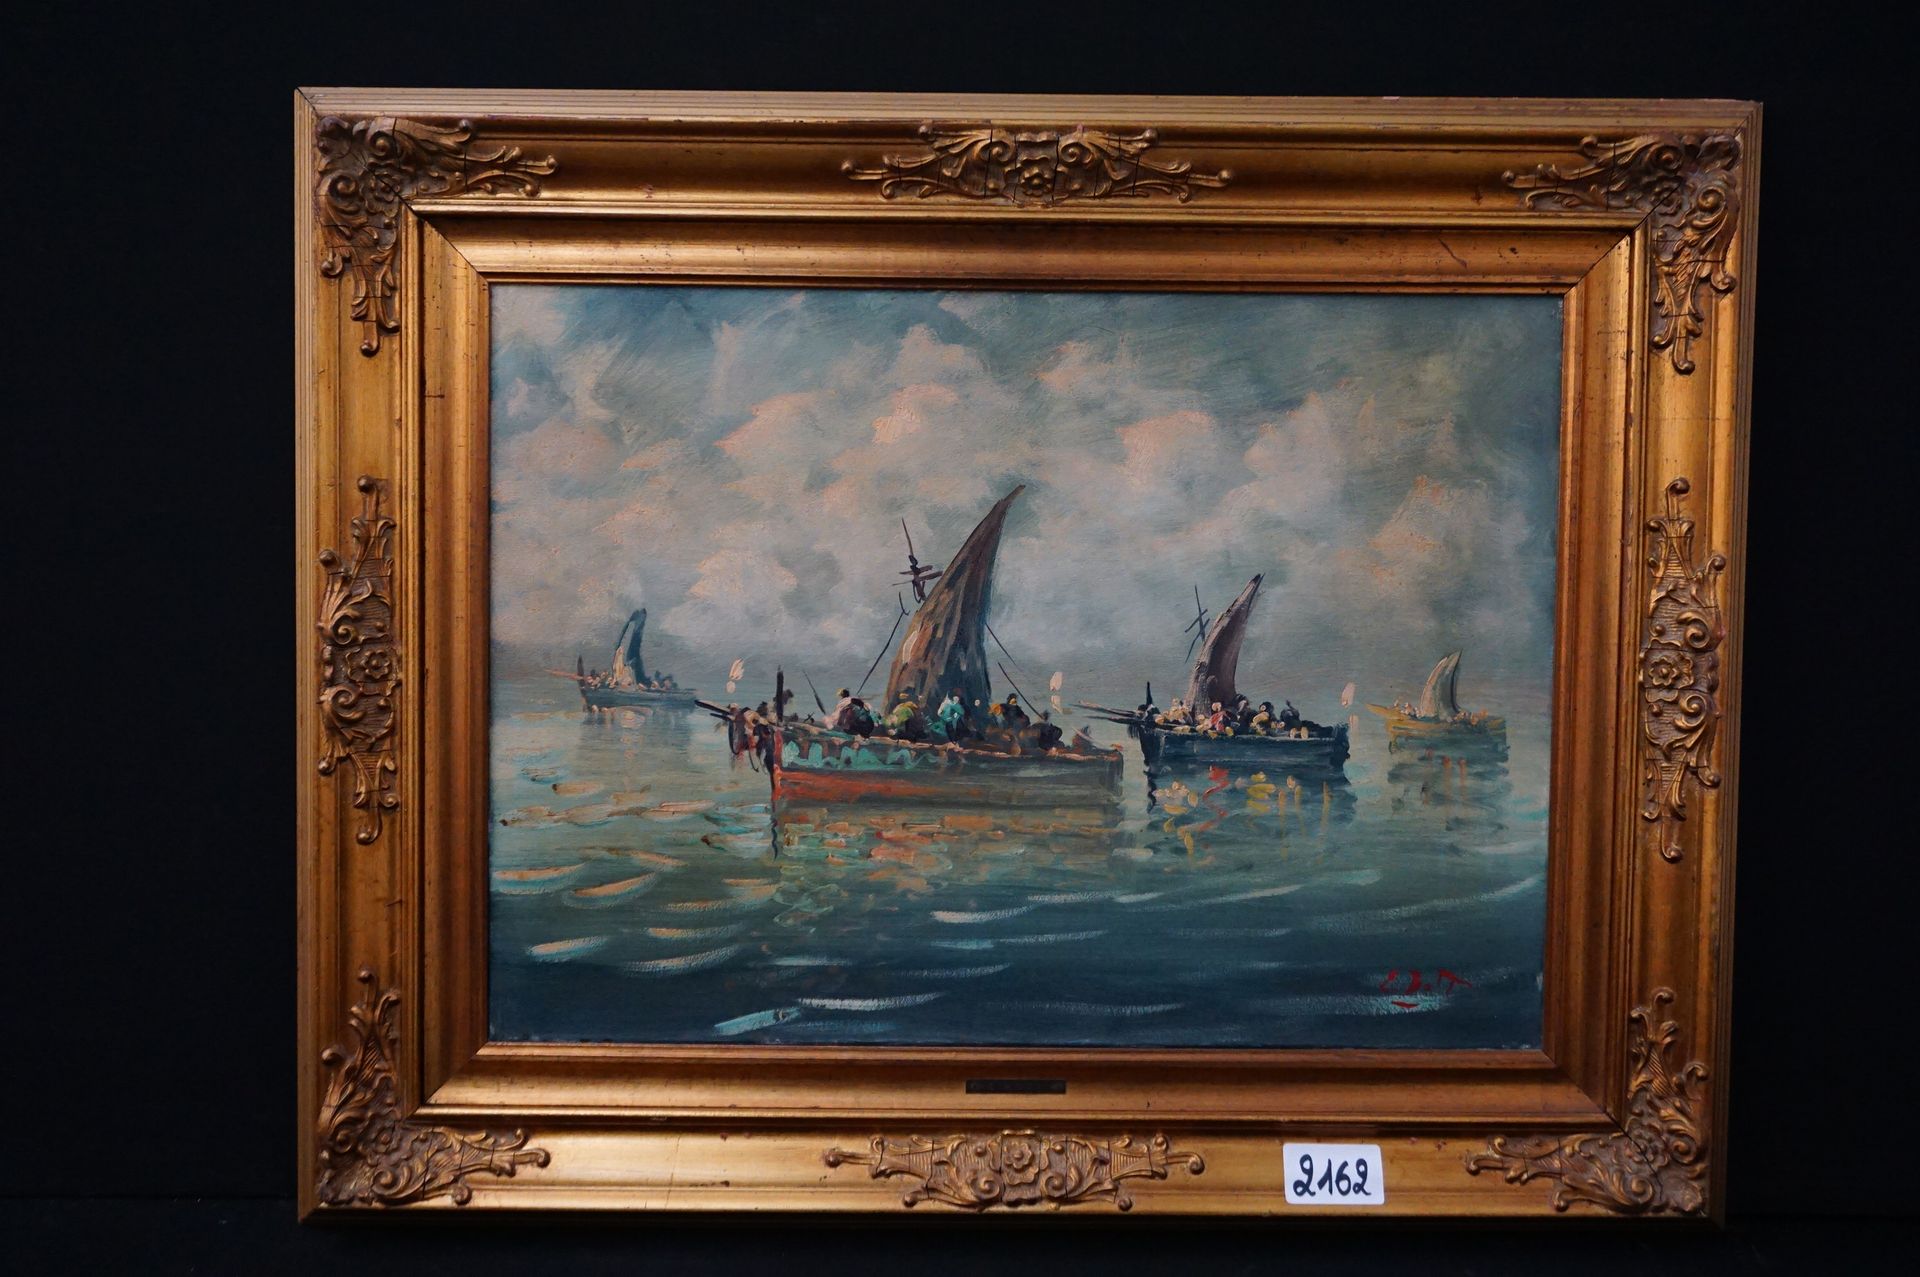 E. BOTT "Marine" - Huile sur toile - Signé - 50 x 70 cm